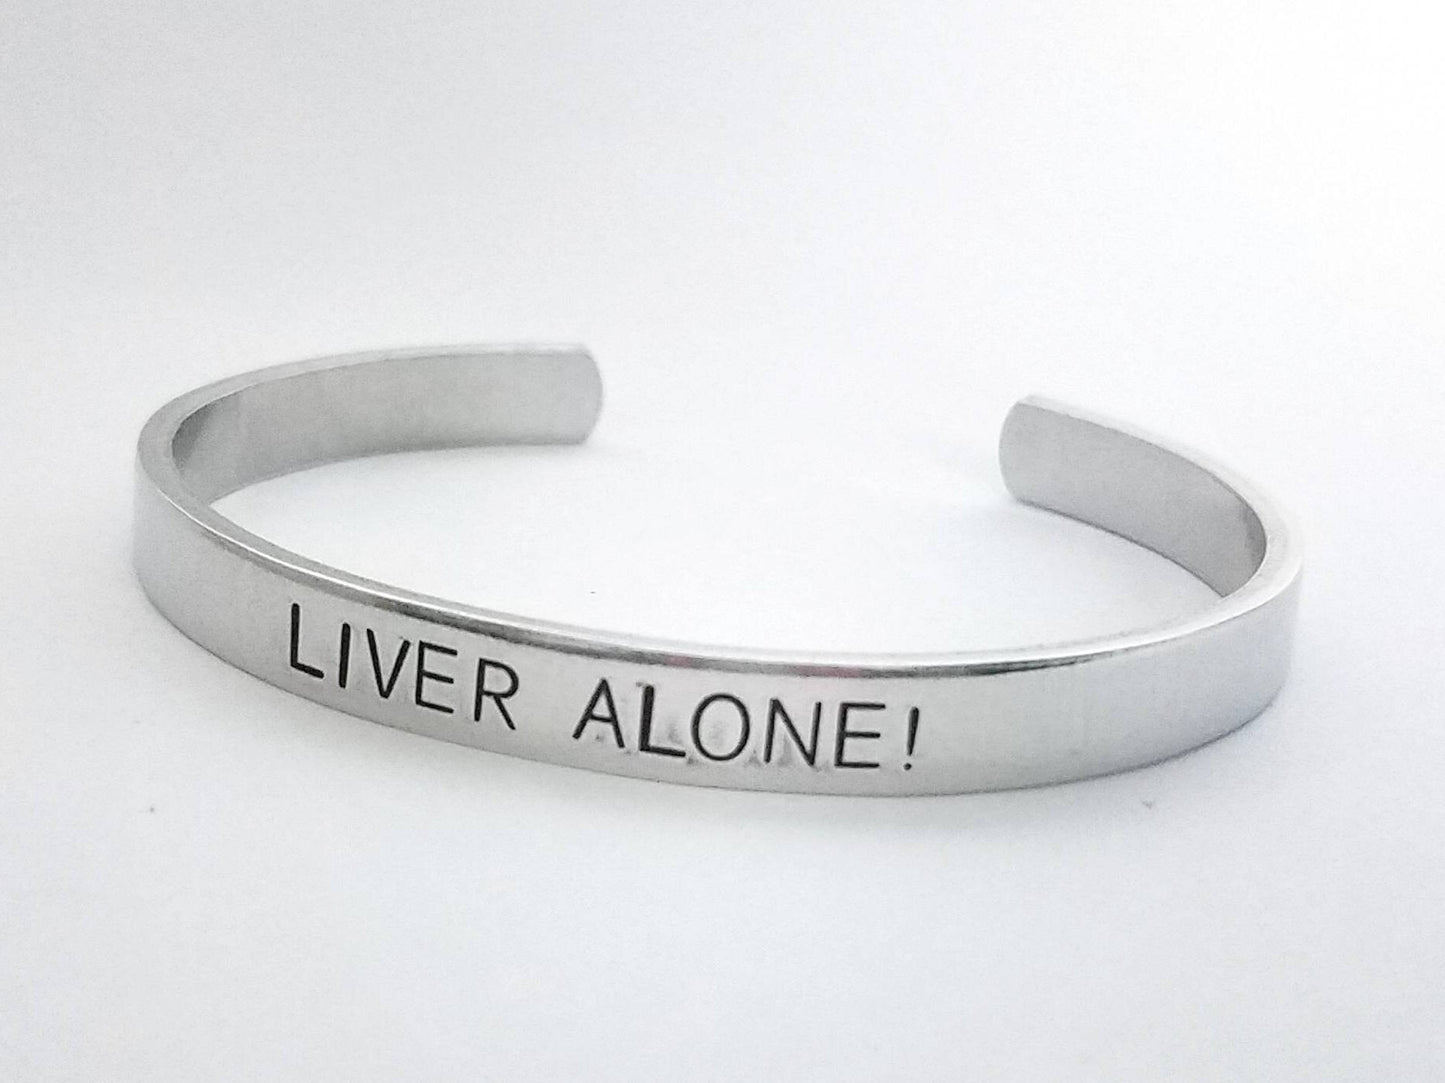 Liver Alone! Scream Cuff Bracelet